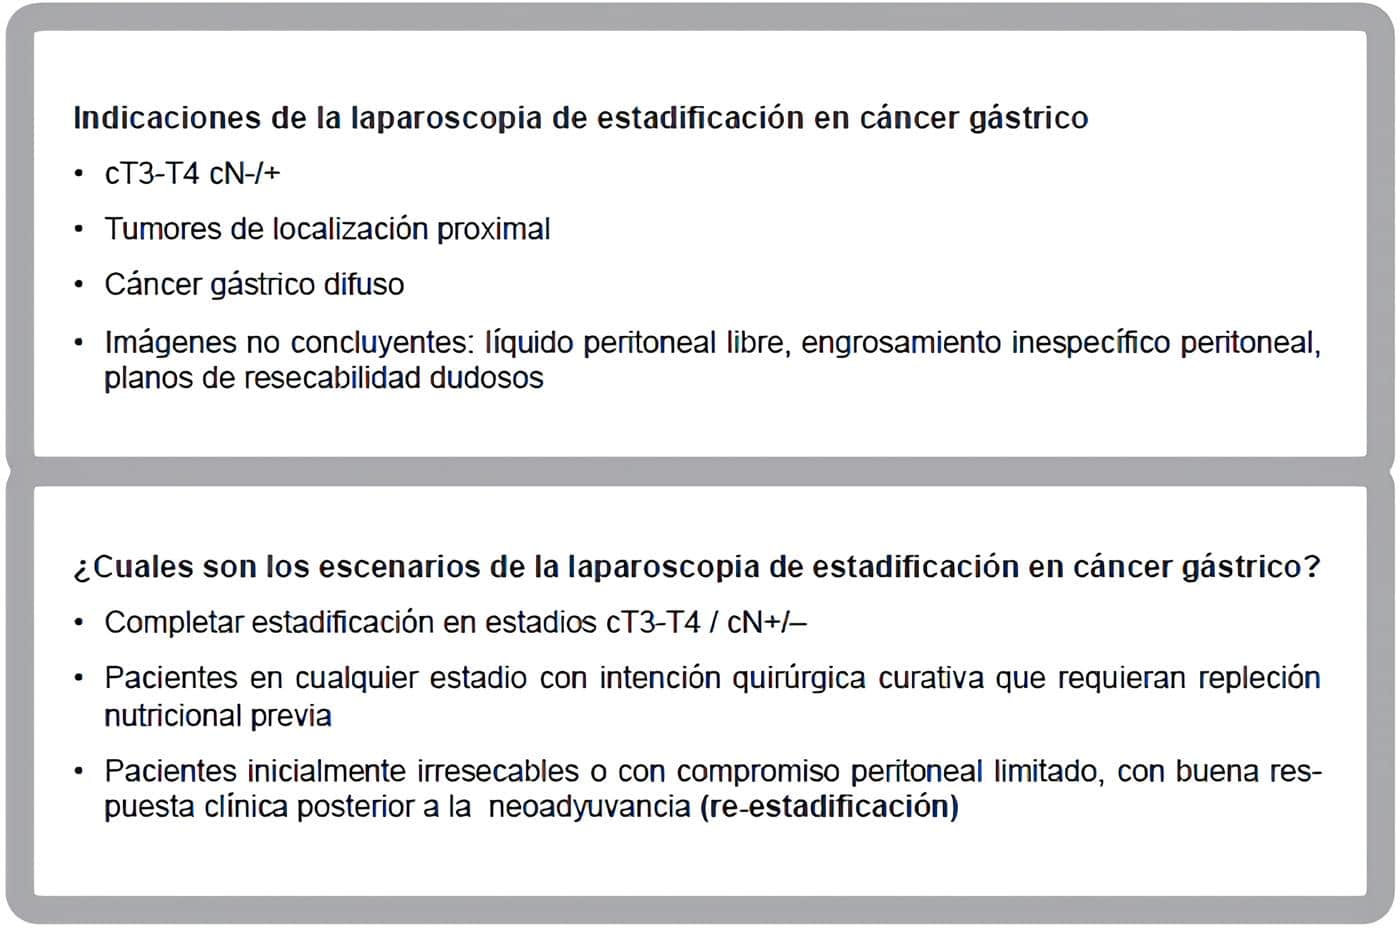 Indicaciones y escenarios de la laparoscopia de estadificación en cáncer gástrico